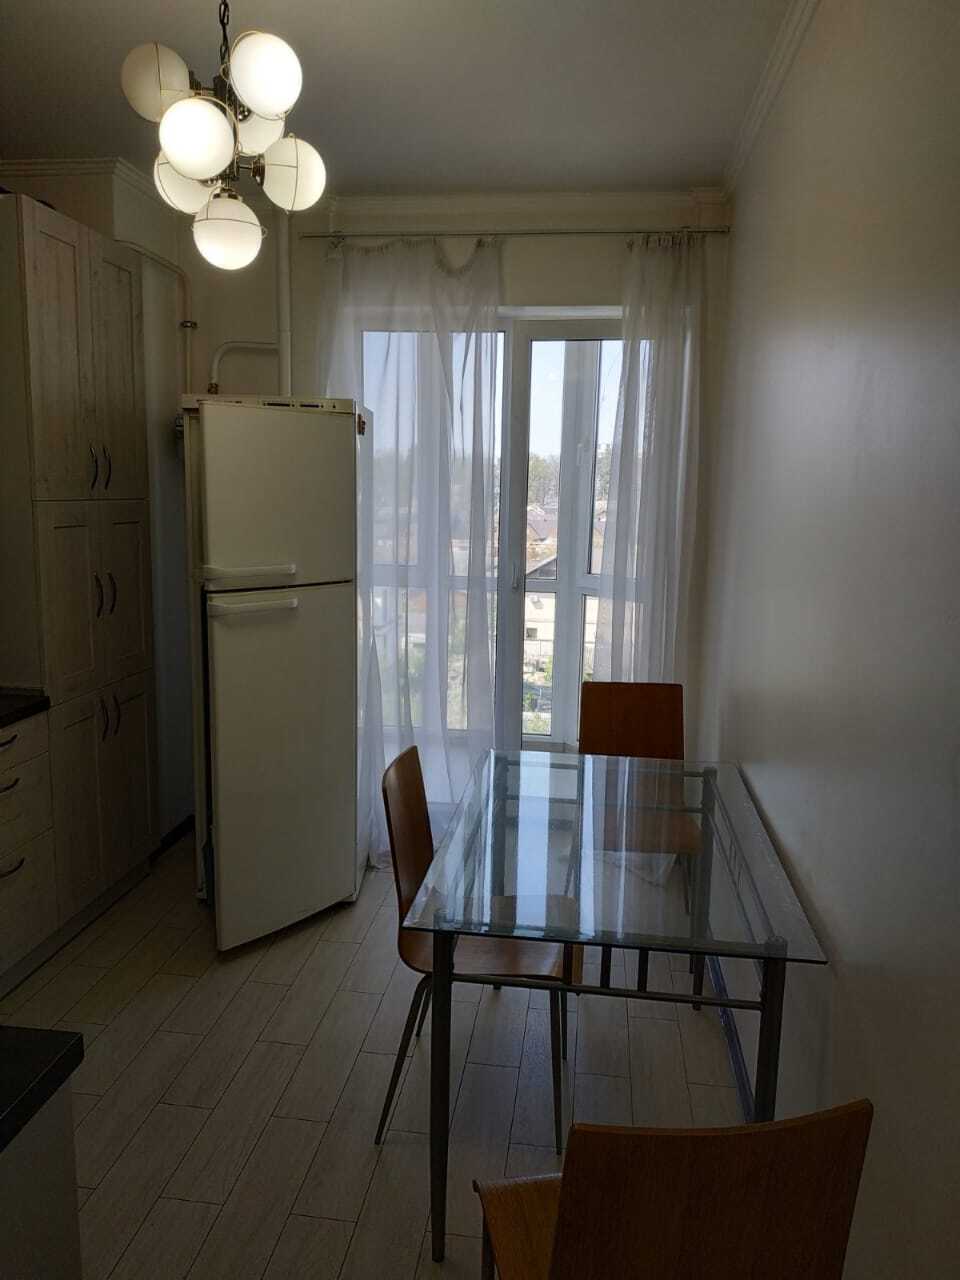 Продажа 1-комнатной квартиры 42 м²